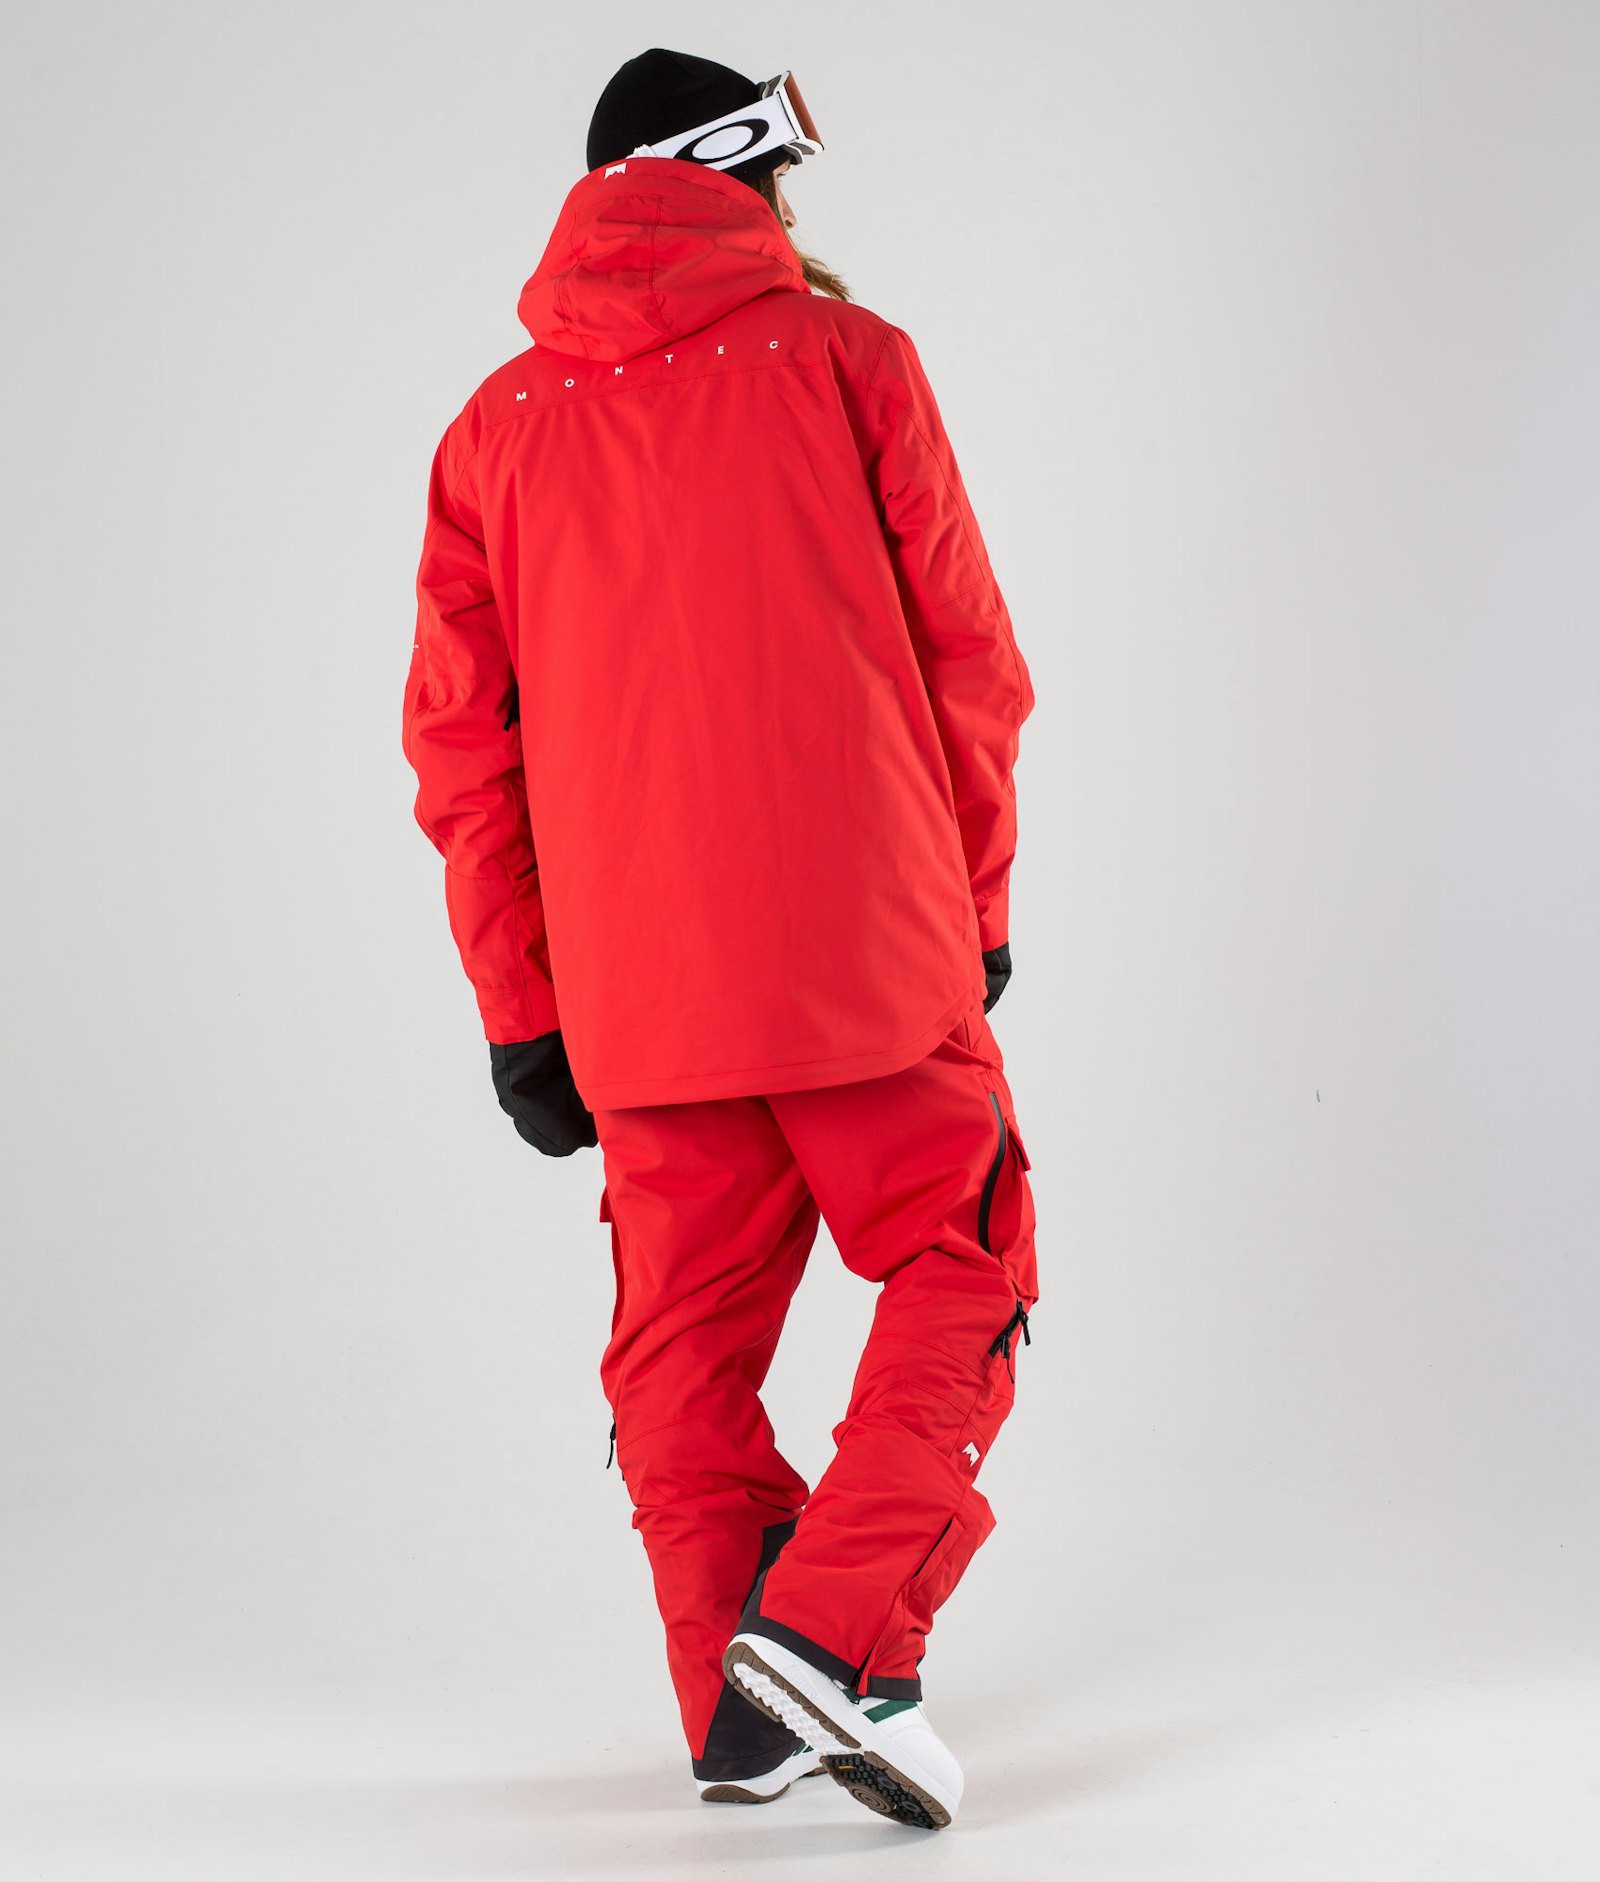 Fawk 2019 スノーボードジャケット メンズ Red